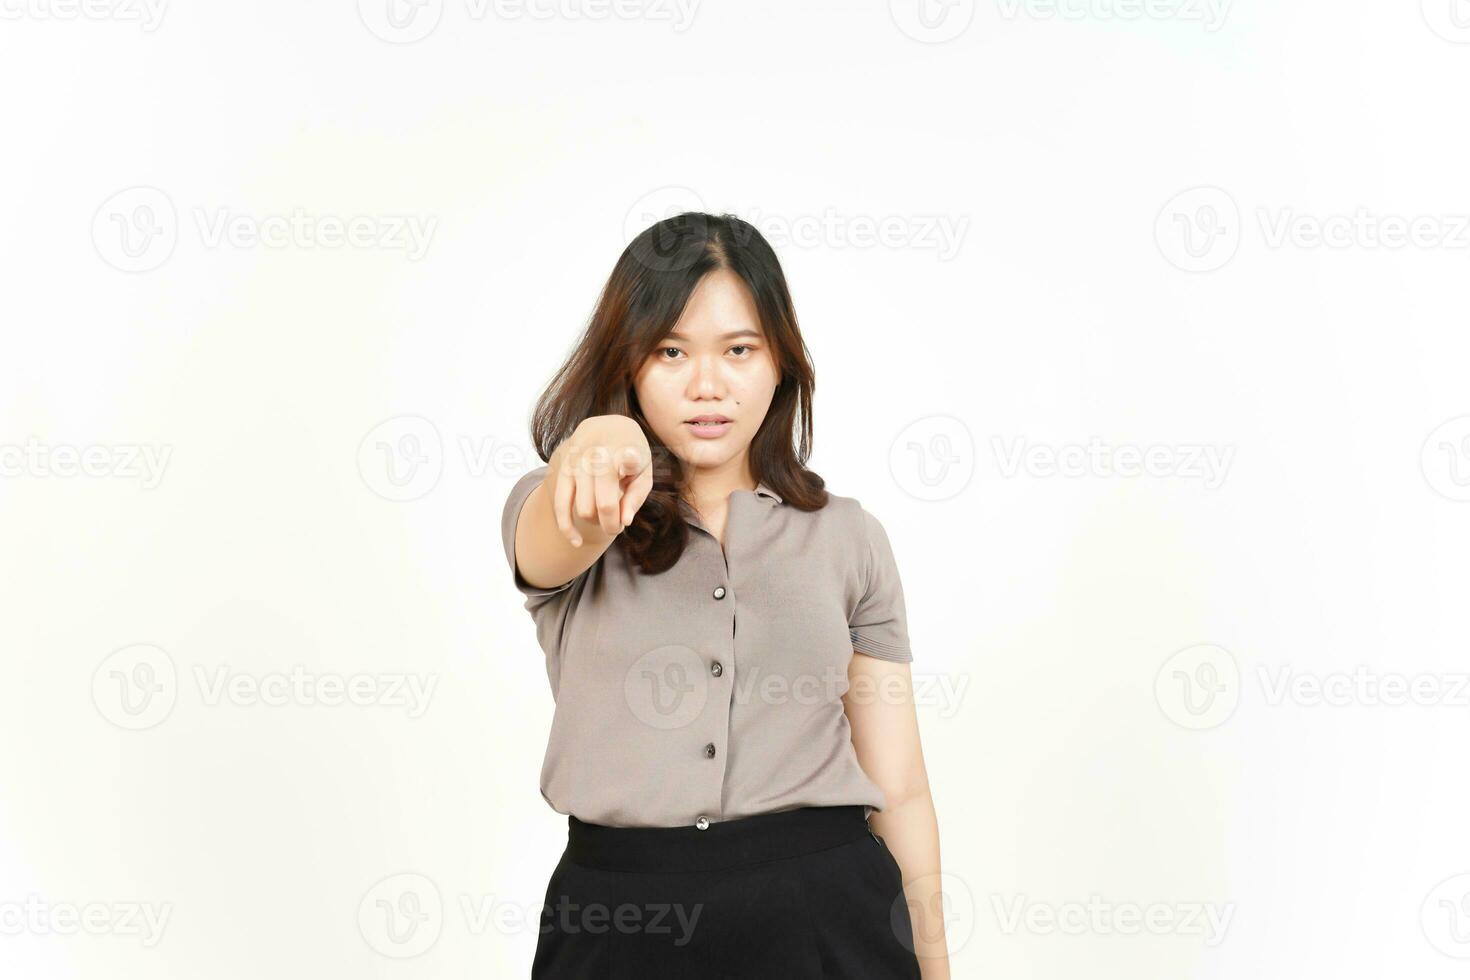 wütend und zeigt auf Sie der schönen asiatischen Frau isoliert auf weißem Hintergrund foto